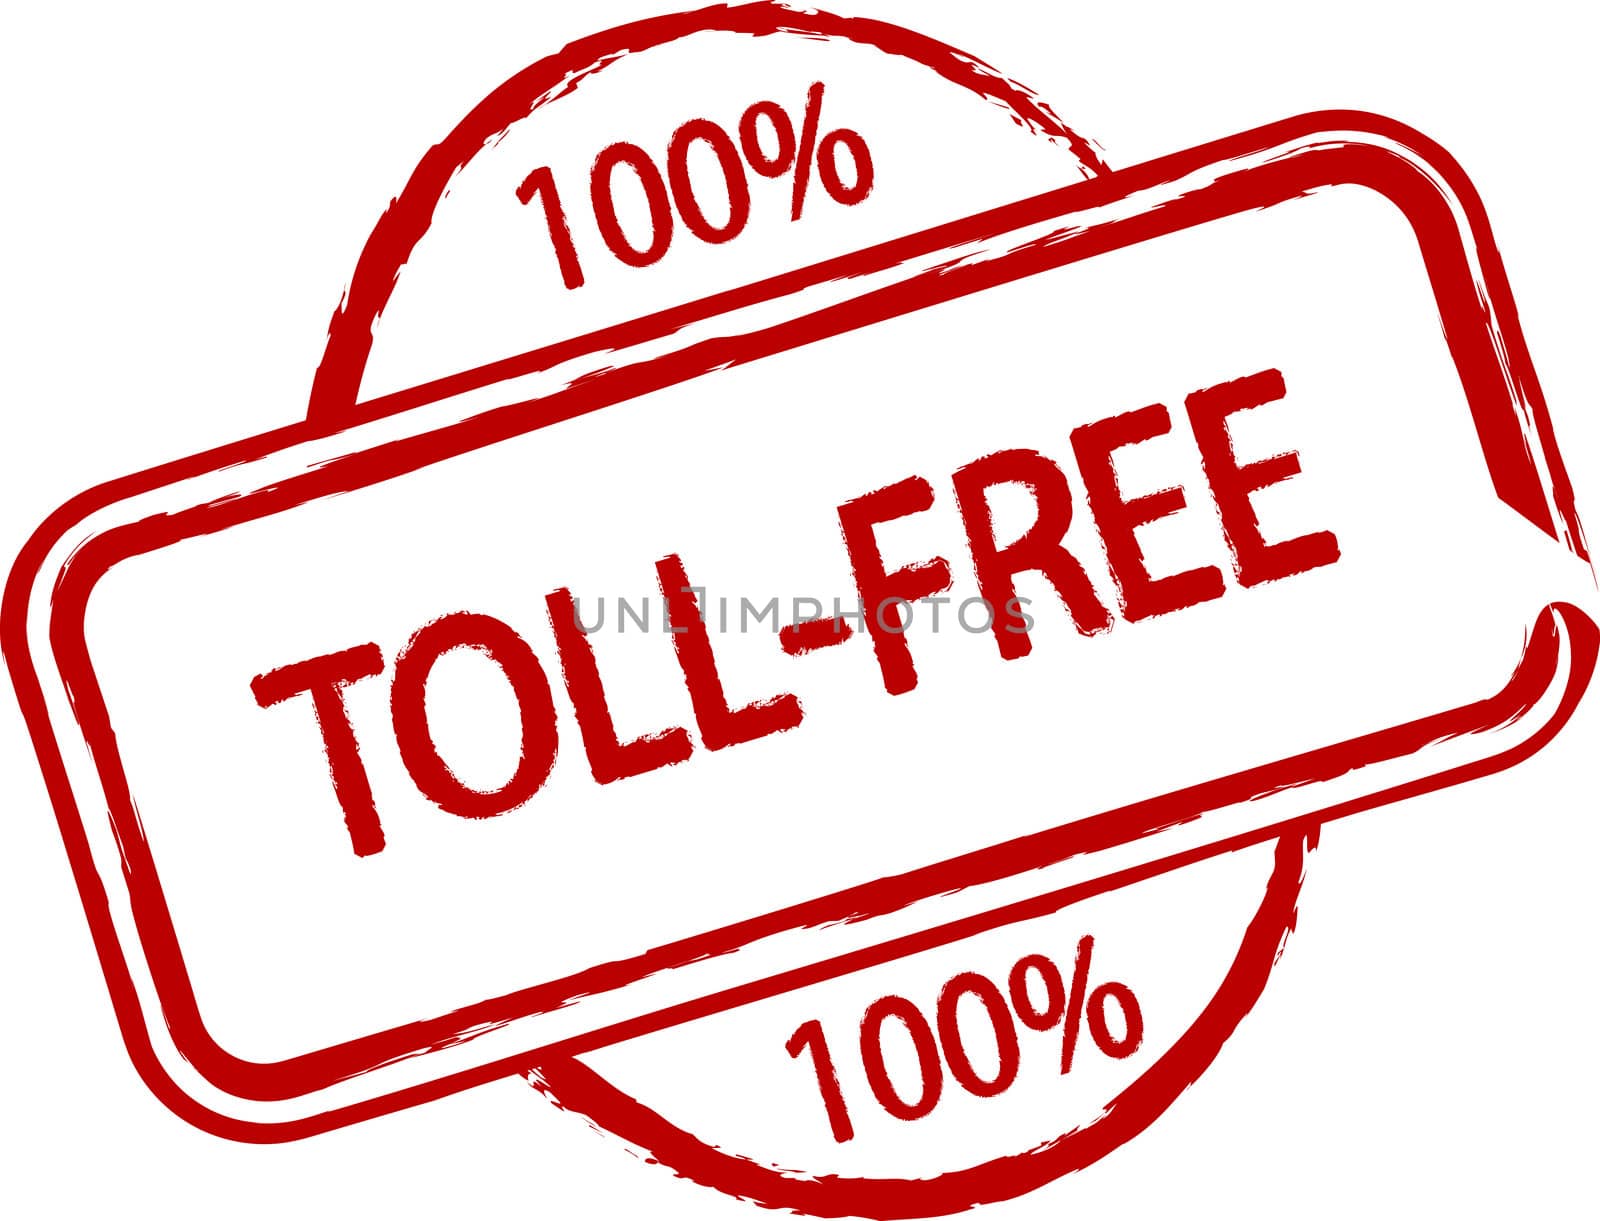 Toll-free by kaarsten